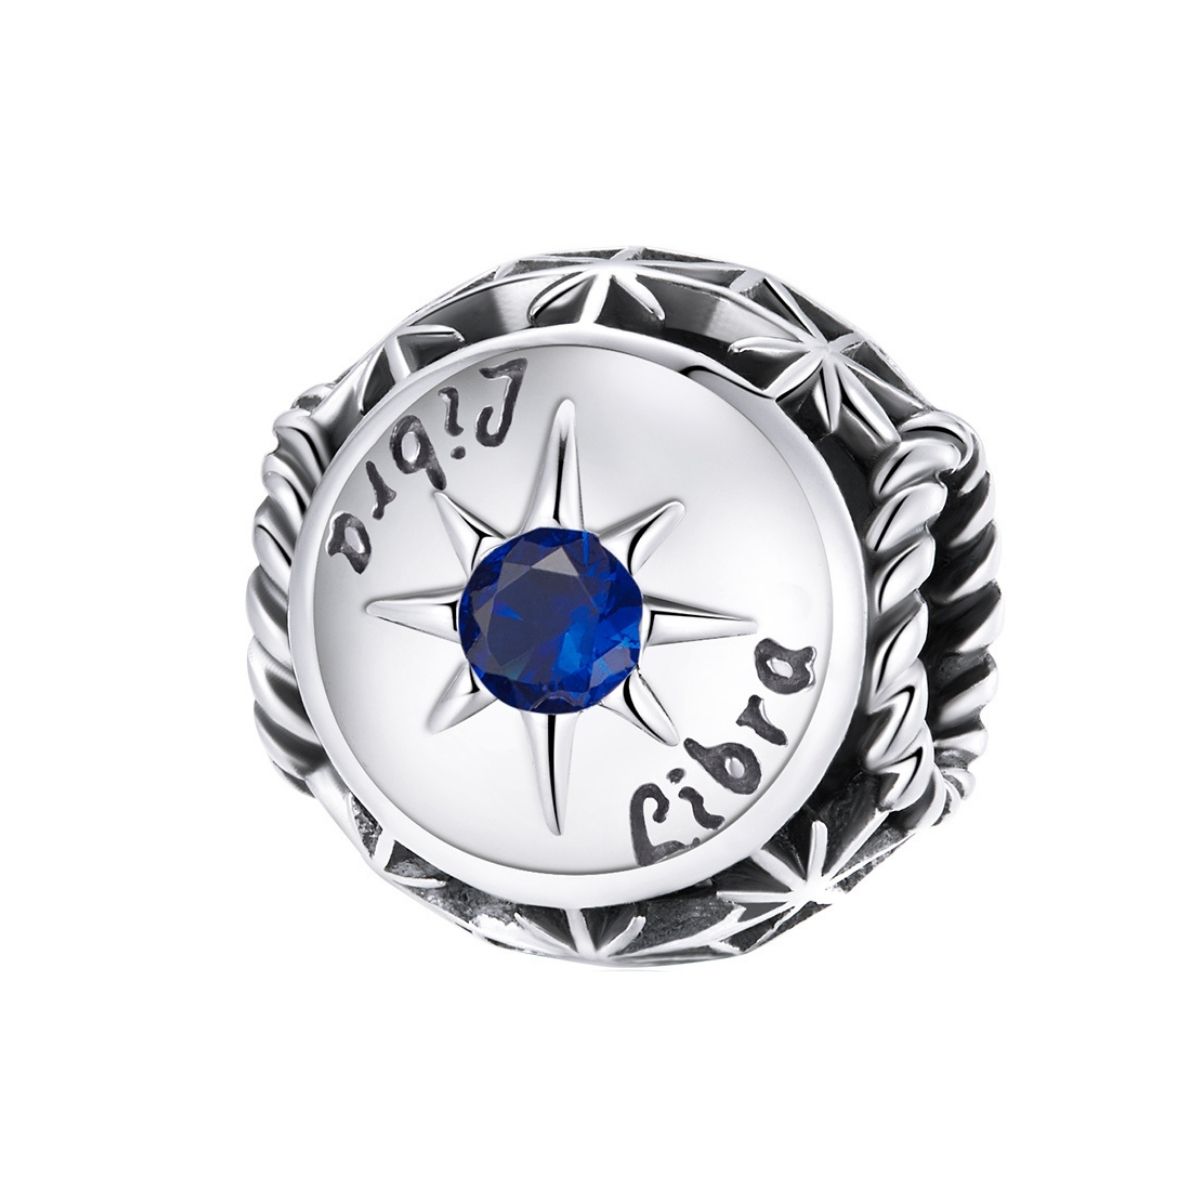 Sterrenbeeld weegschaal bedel met donker blauwe zirkonia steen  zodiac libra bead  Zilverana  geschikt voor Biagi , Pandora , Trollbeads armband  925 zilver